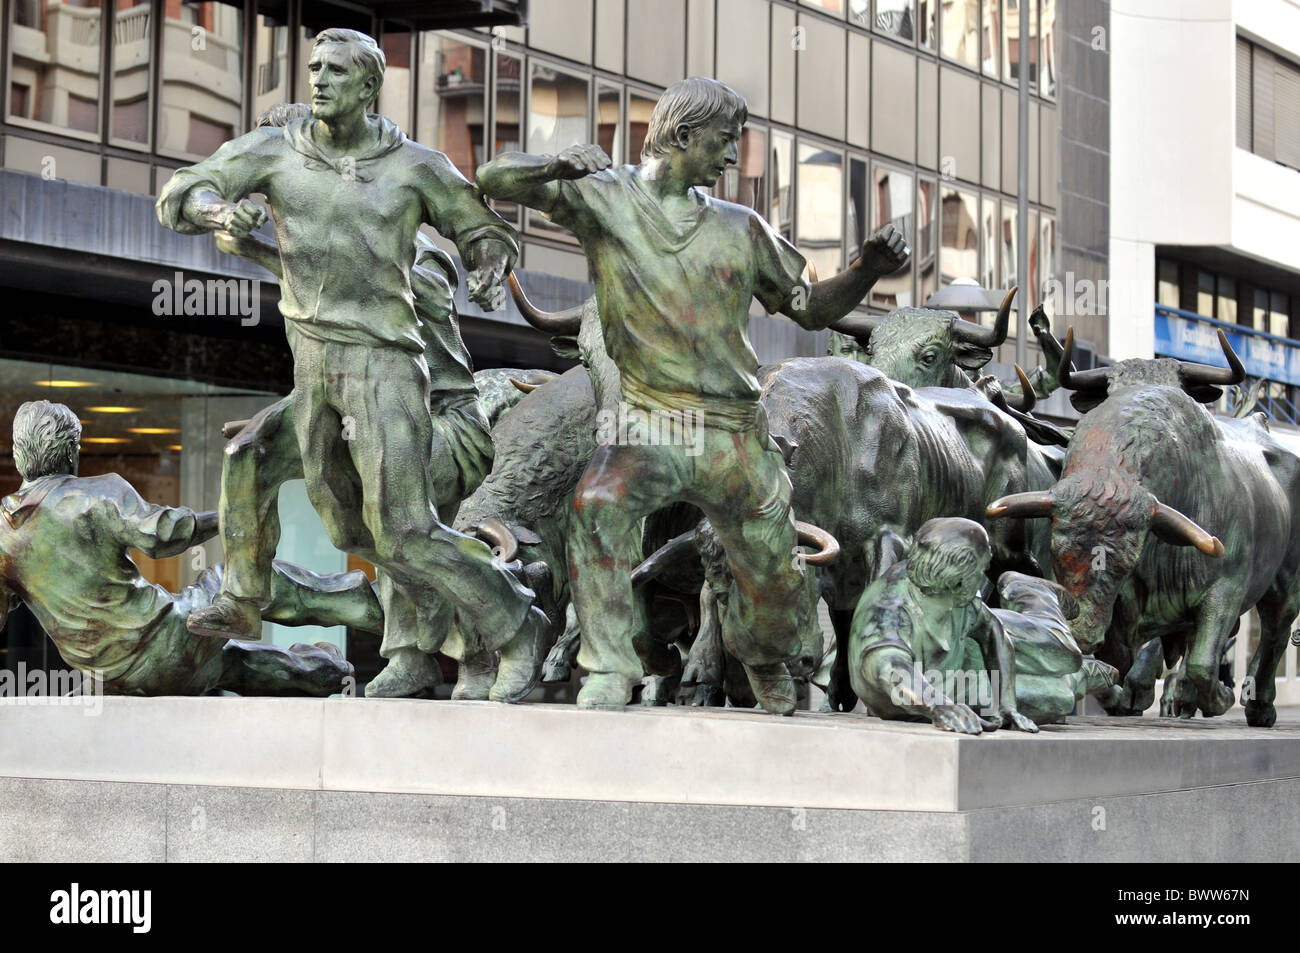 Running of the Bulls statue, Pamplona, Navarre, Spain Stock Photo